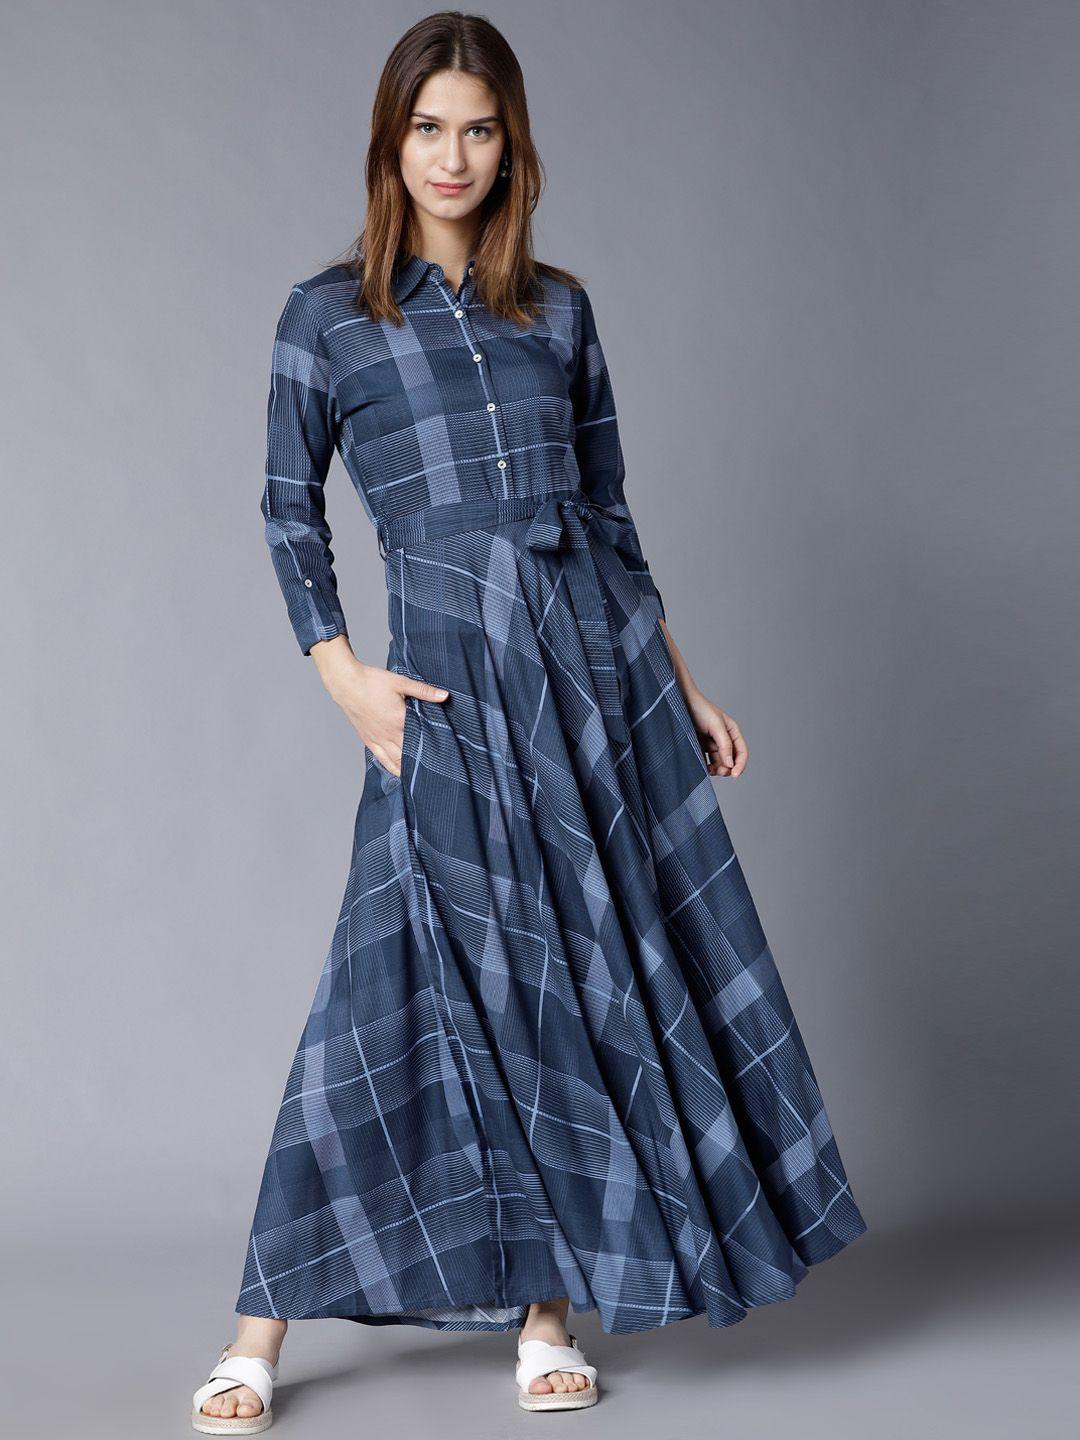 vishudh women navy blue printed maxi dress